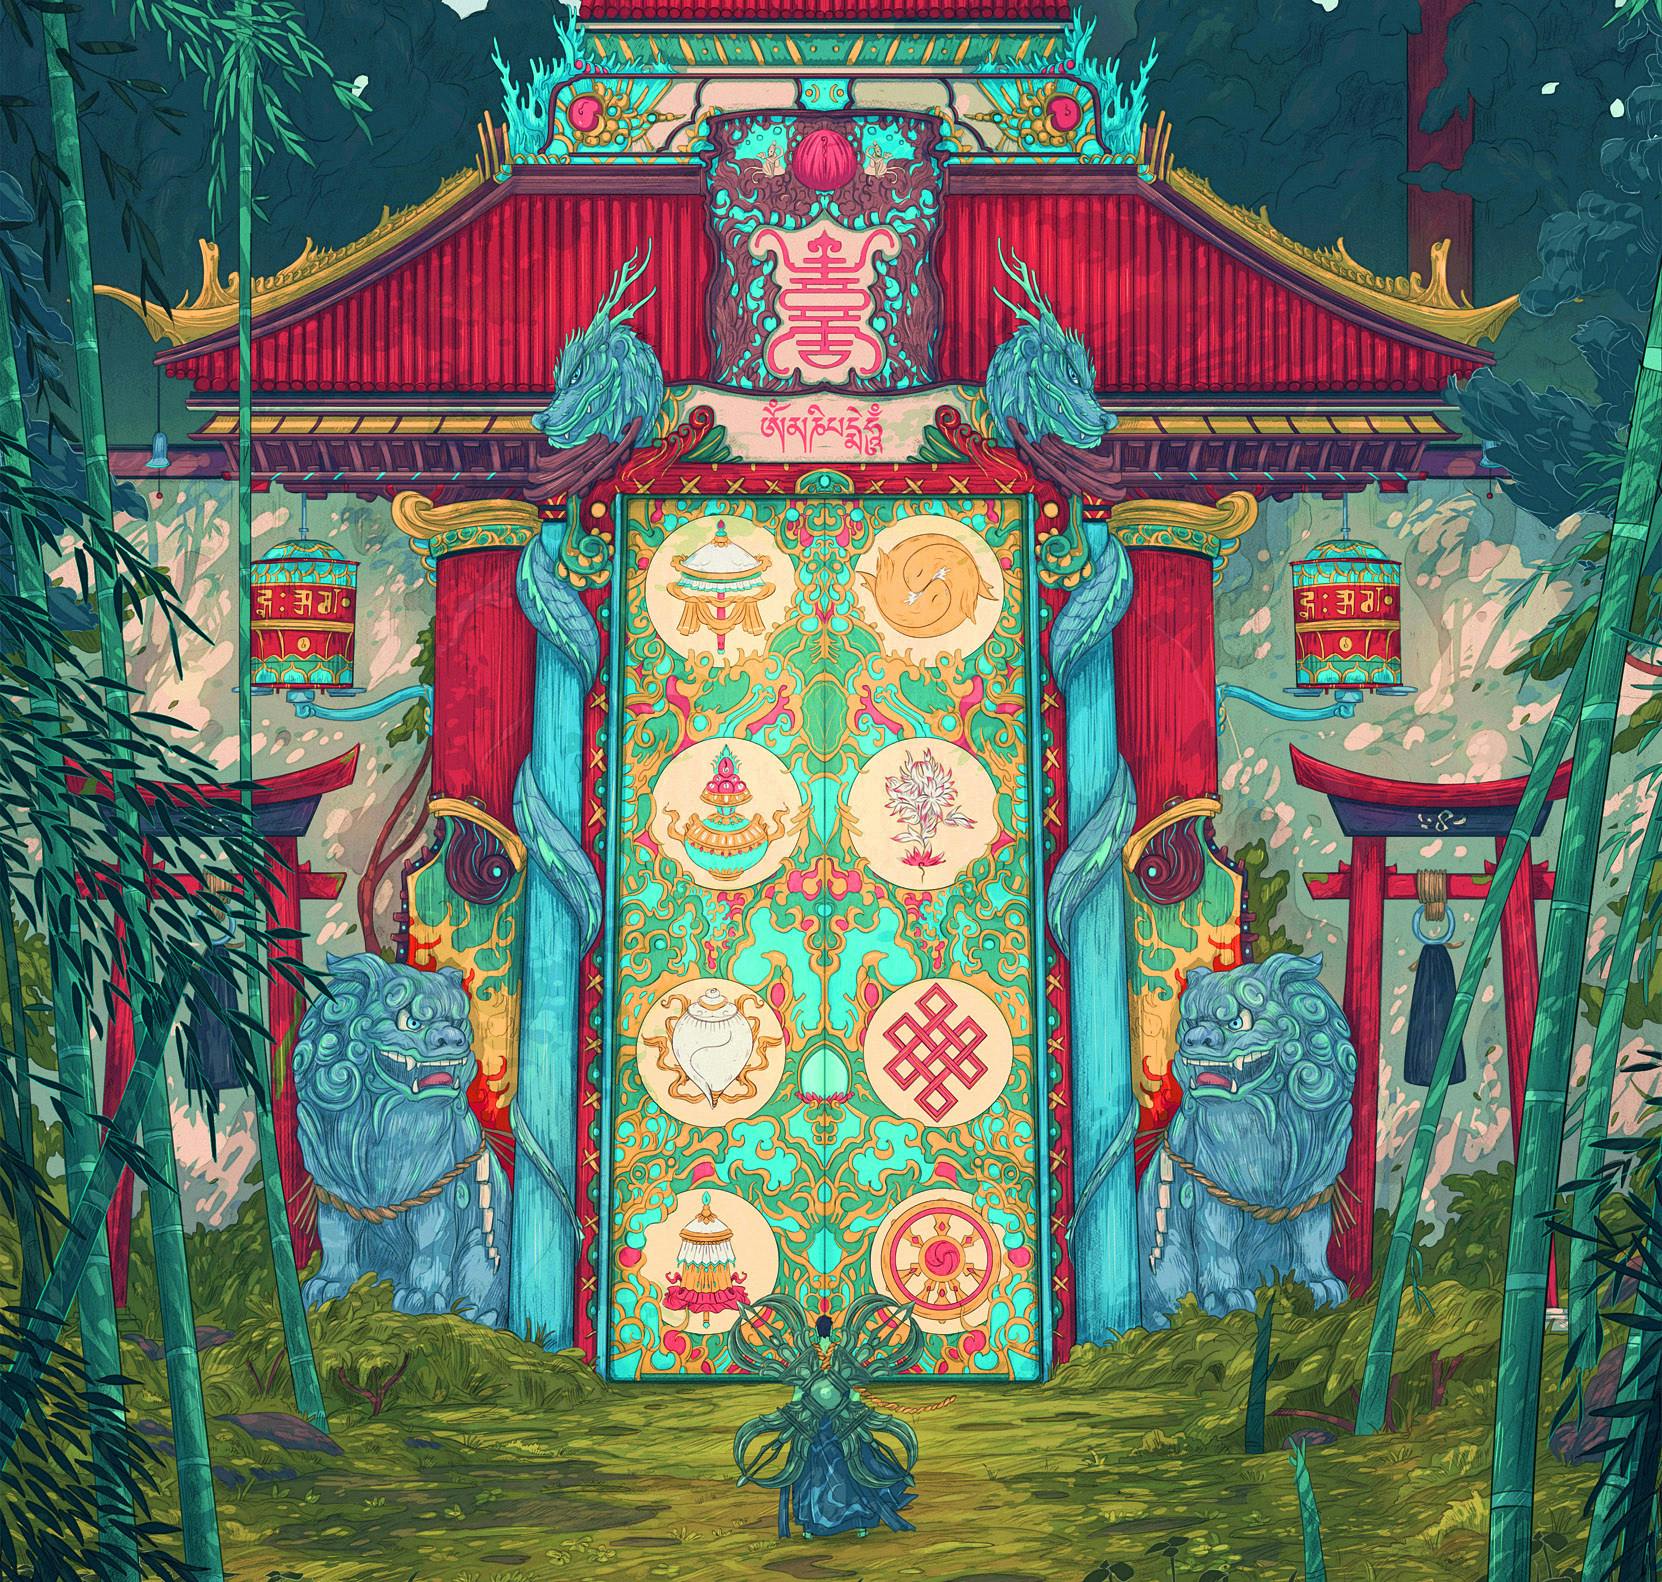 A decorative temple